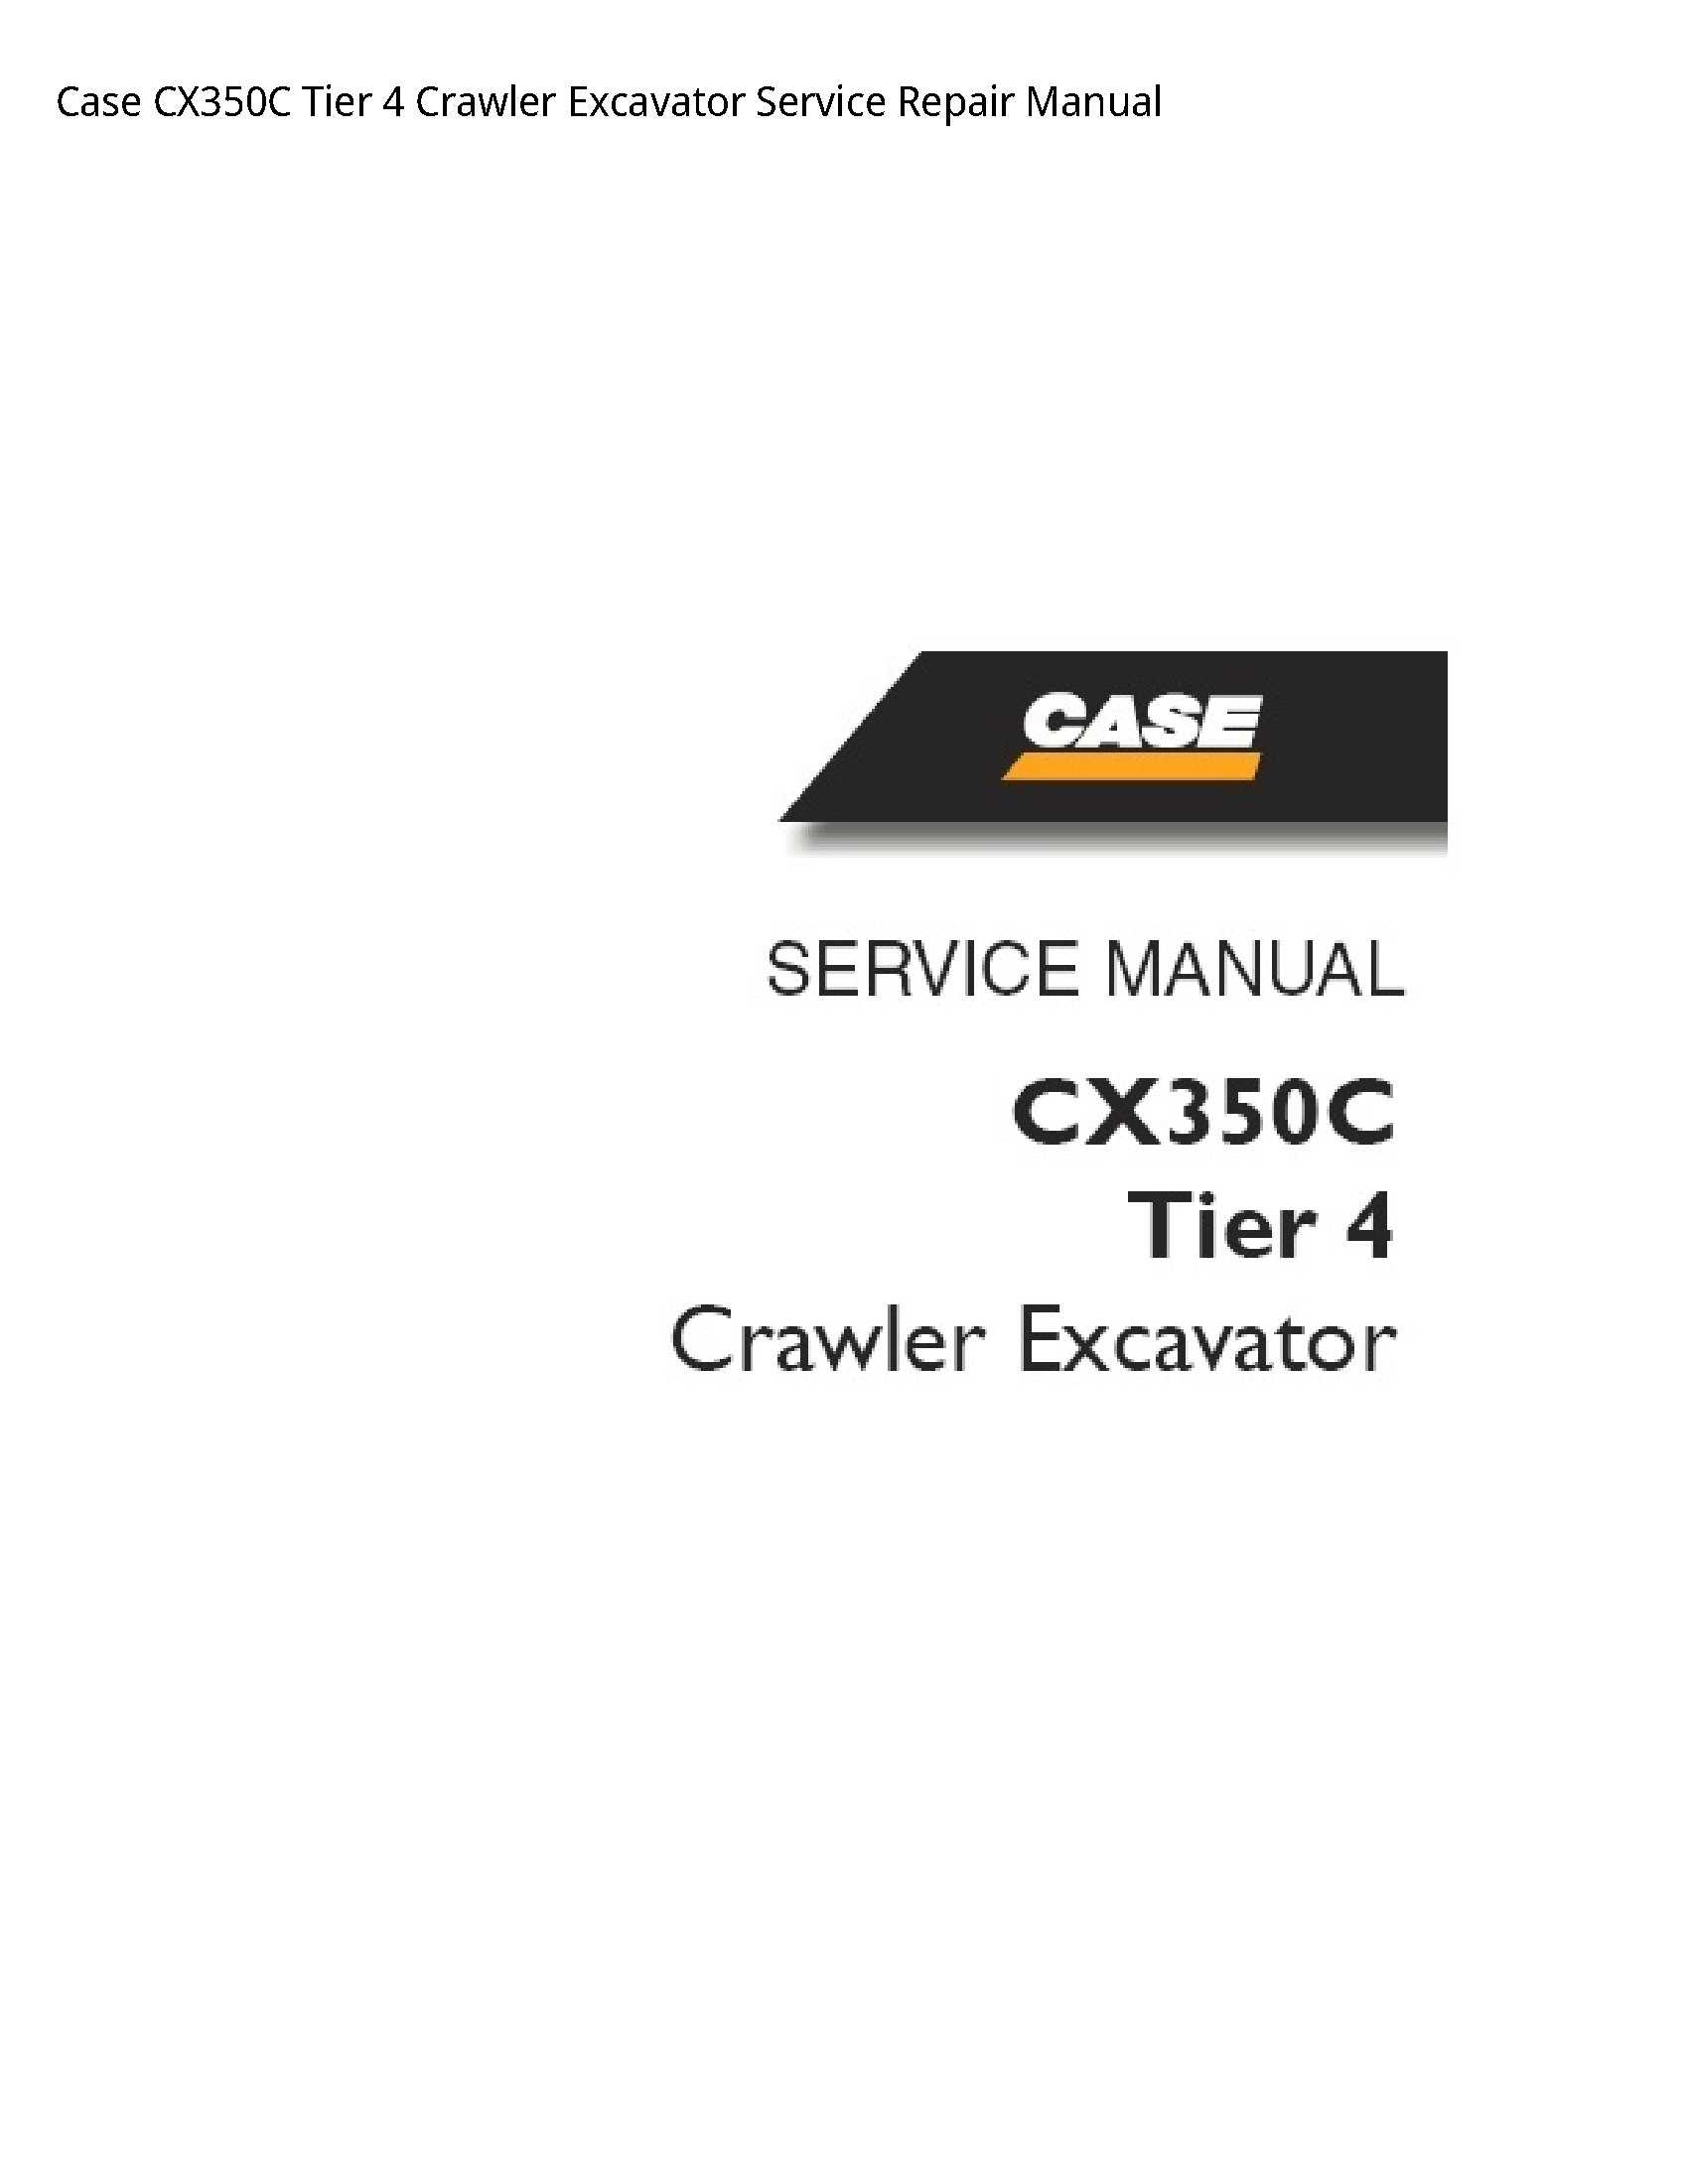 Case/Case IH CX350C Tier Crawler Excavator manual